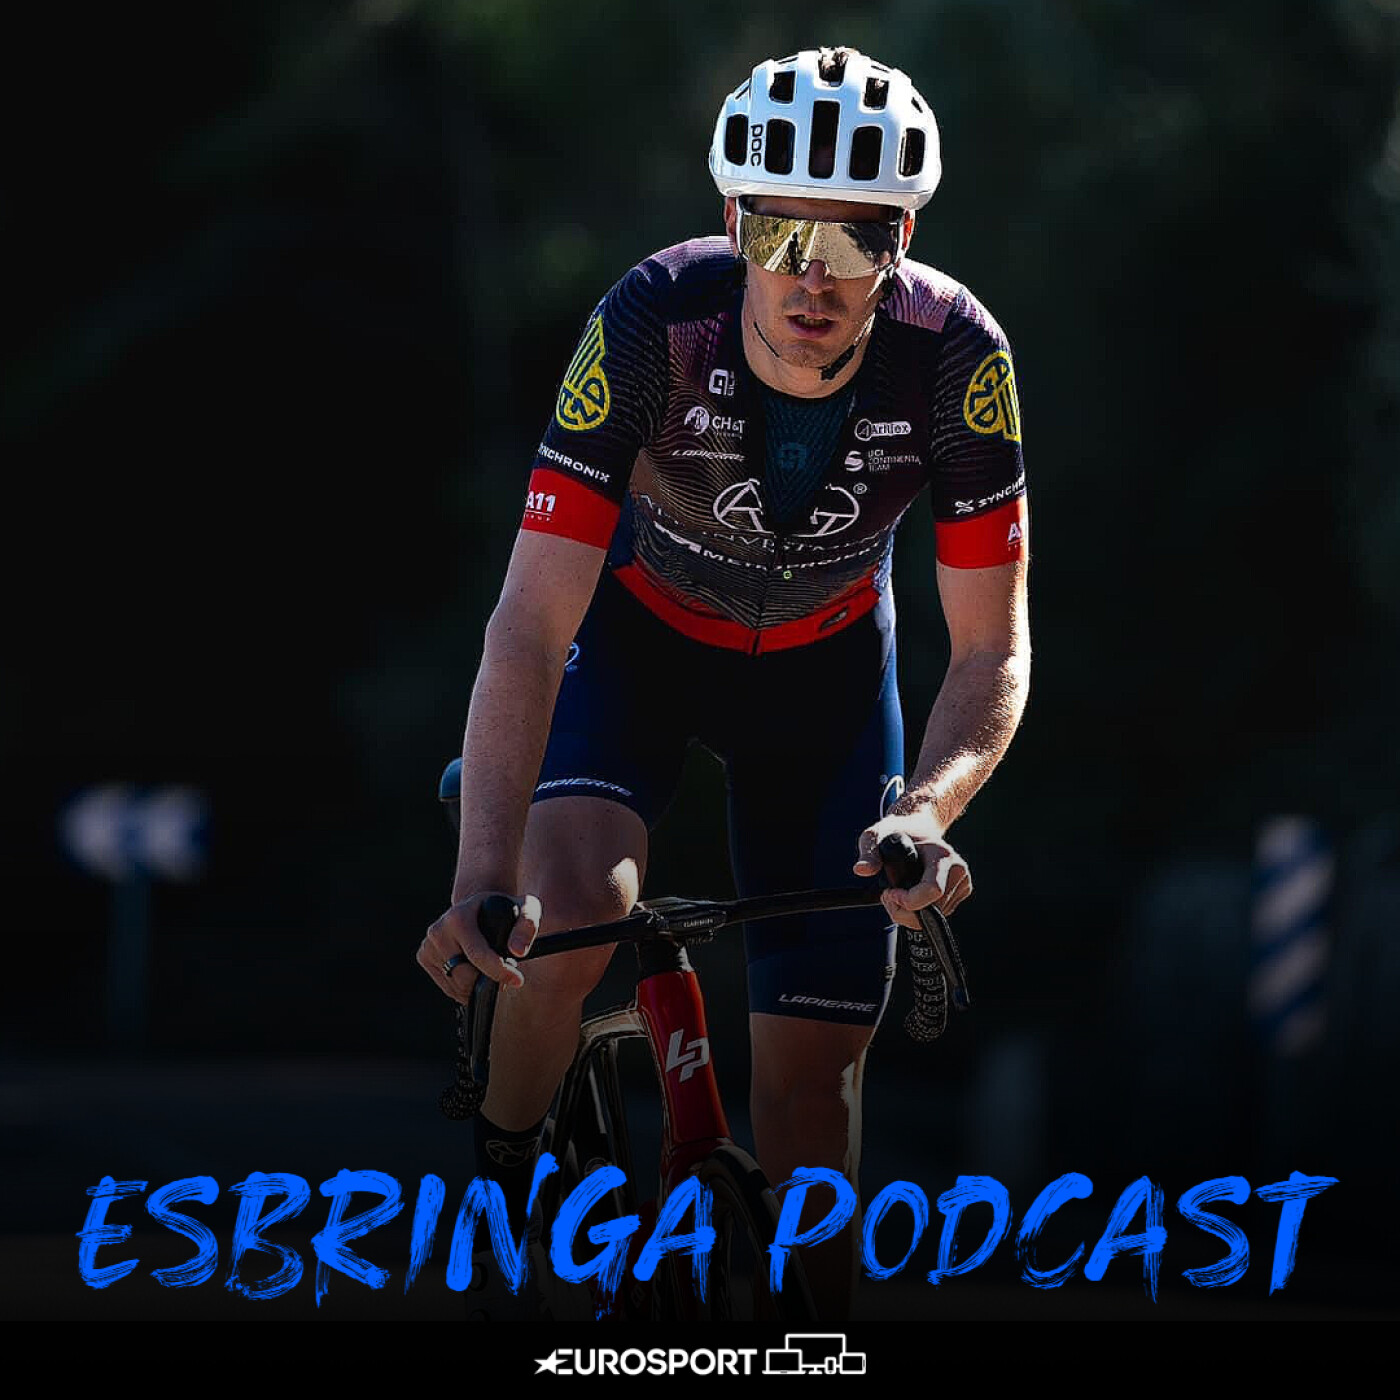 ESBringa - Miért rontotta el Pogacar a Katalán kört, és miért nem ölelkezik Lance Armstrong?